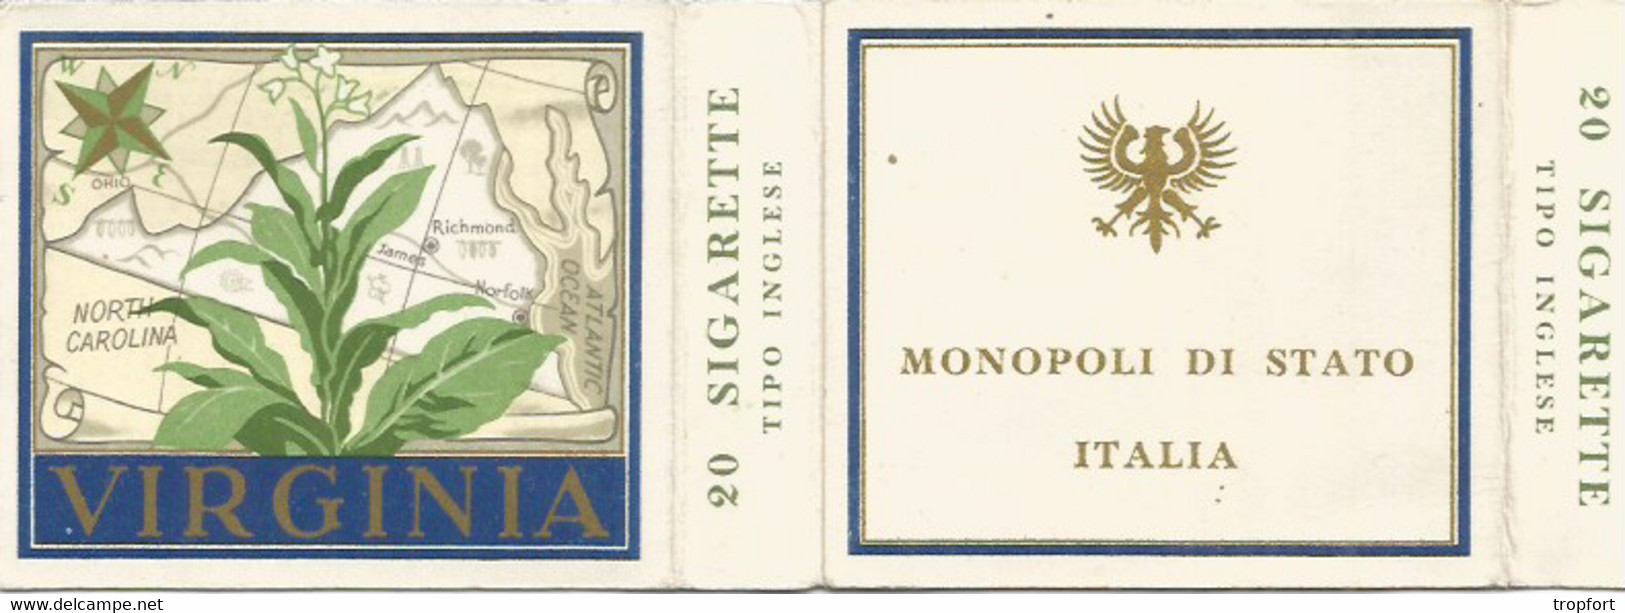 JJ / BOITE CIGARETTE VIRGINIA Monopoli Di Stato ITALIE Italia 20 SIGARETTE - Etichette